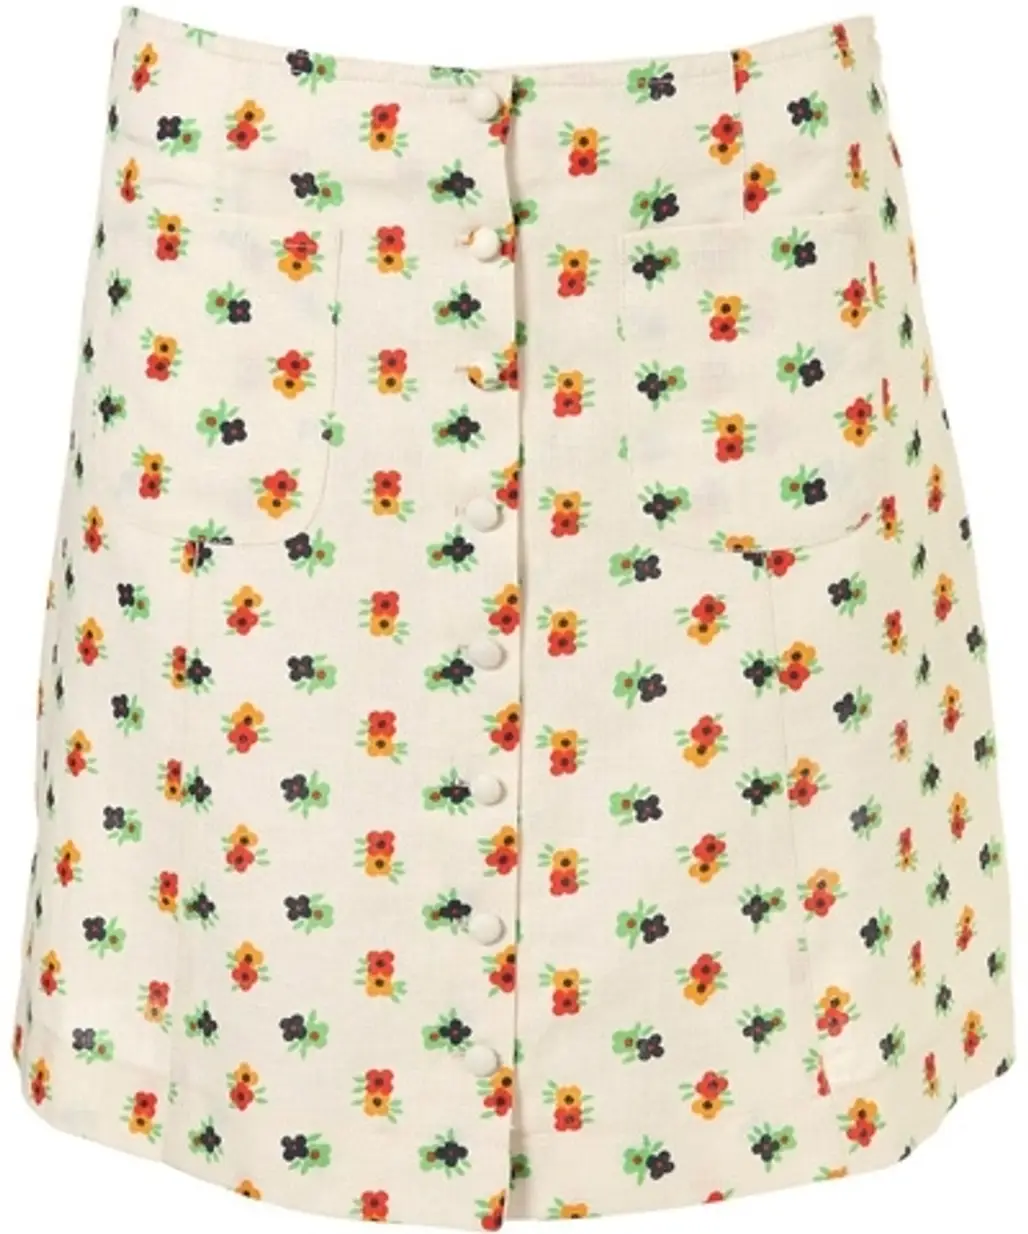 Topshop Floral Print Linen Skirt